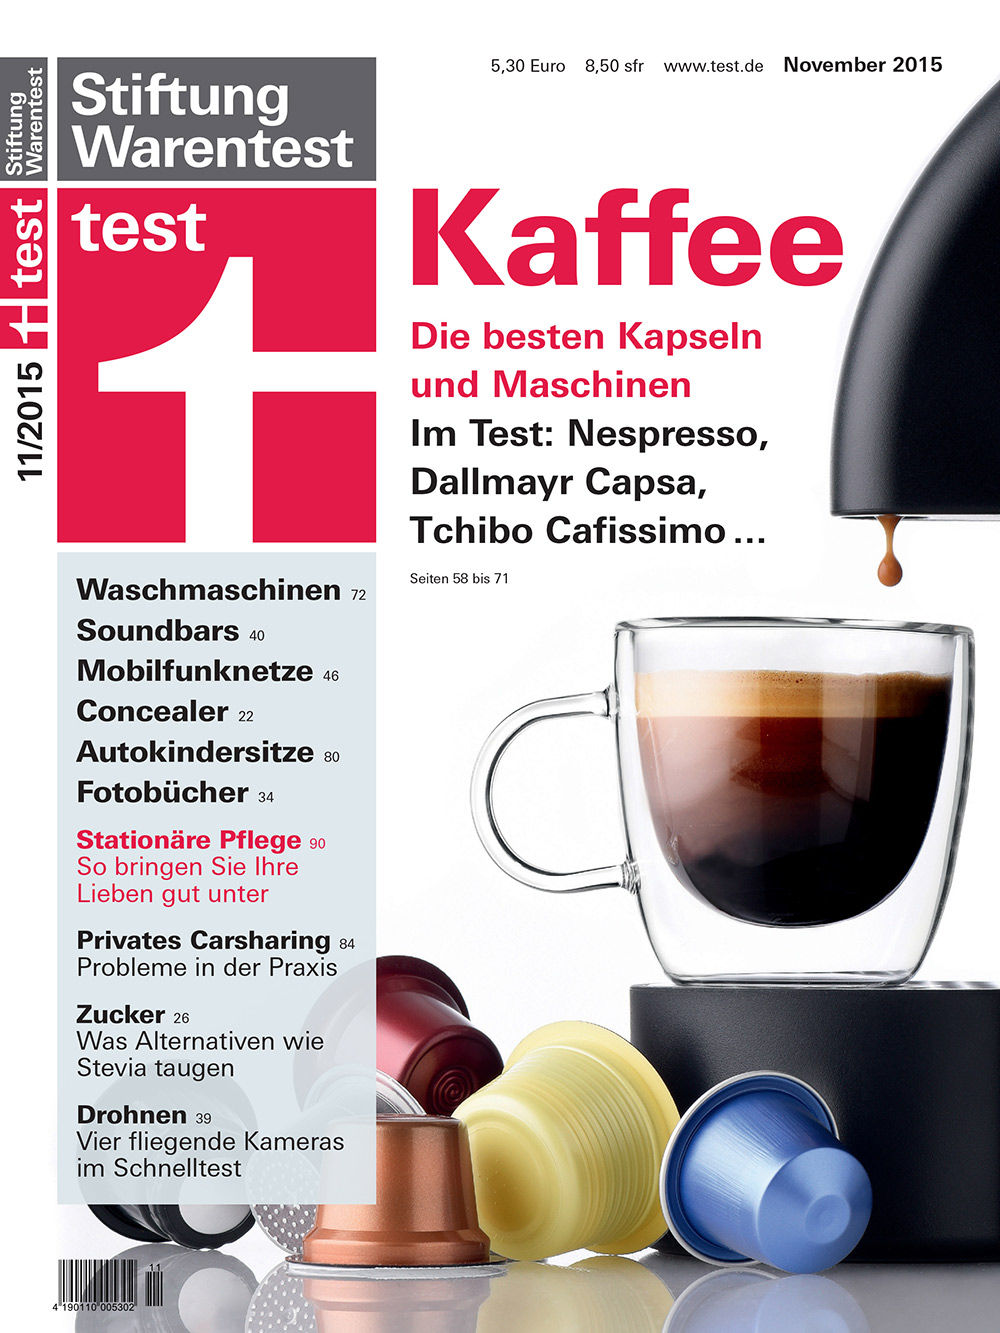 Kaffee als Aufmacher-Thema: Die Stiftung Warentest hat für die November-Ausgabe von „test“ Kapseln und Maschinen kritisch unter die Lupe genommen.